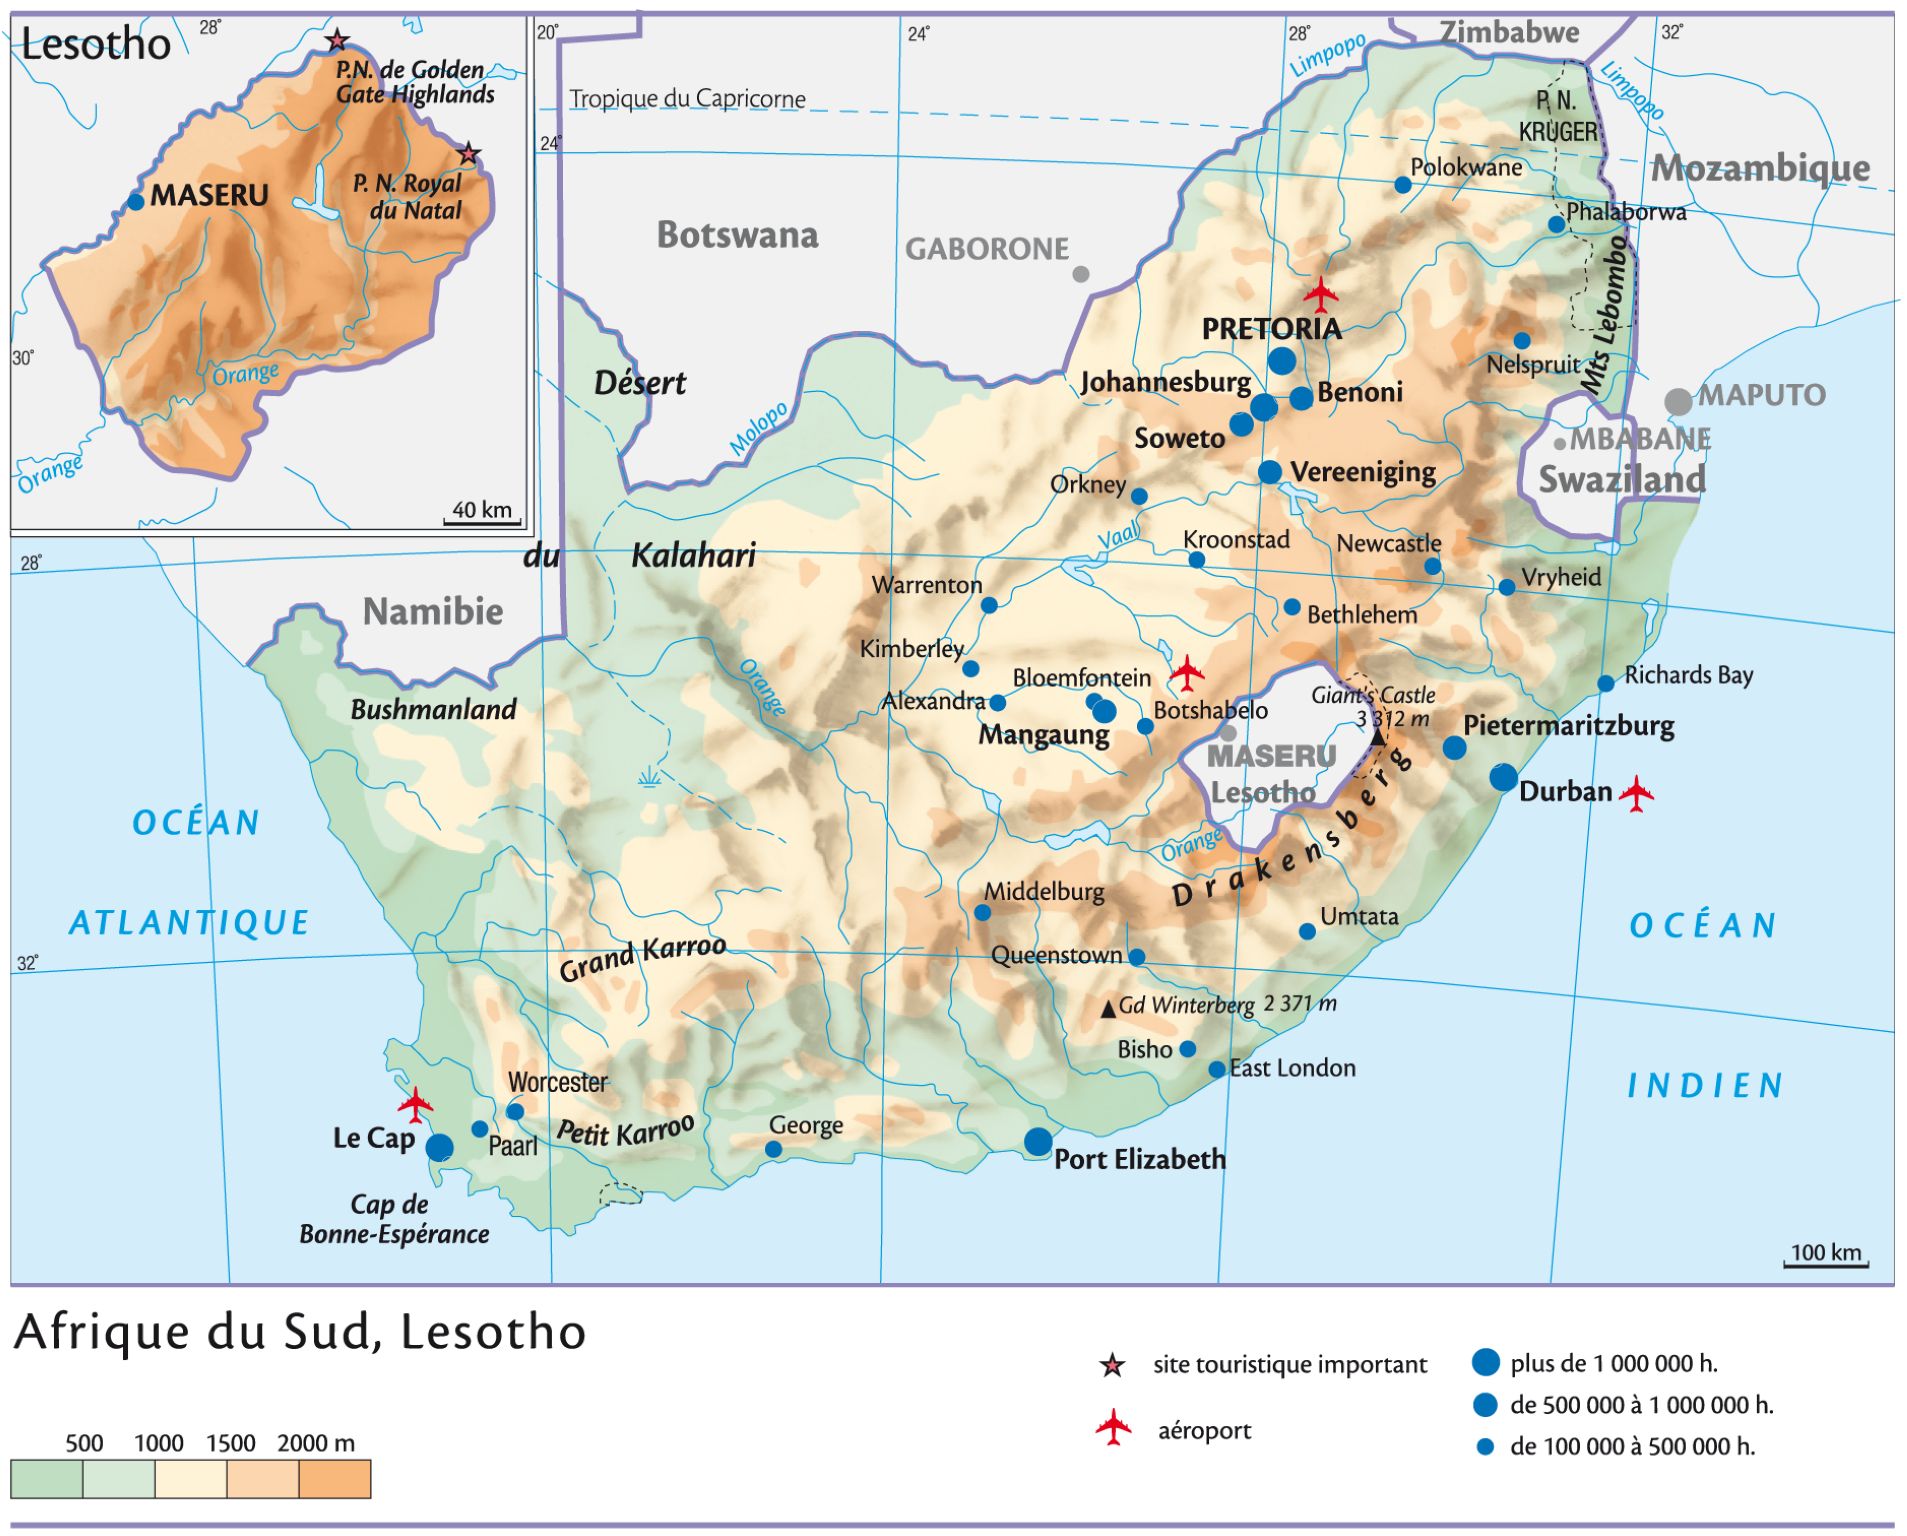 Afrique du Sud et Lesotho